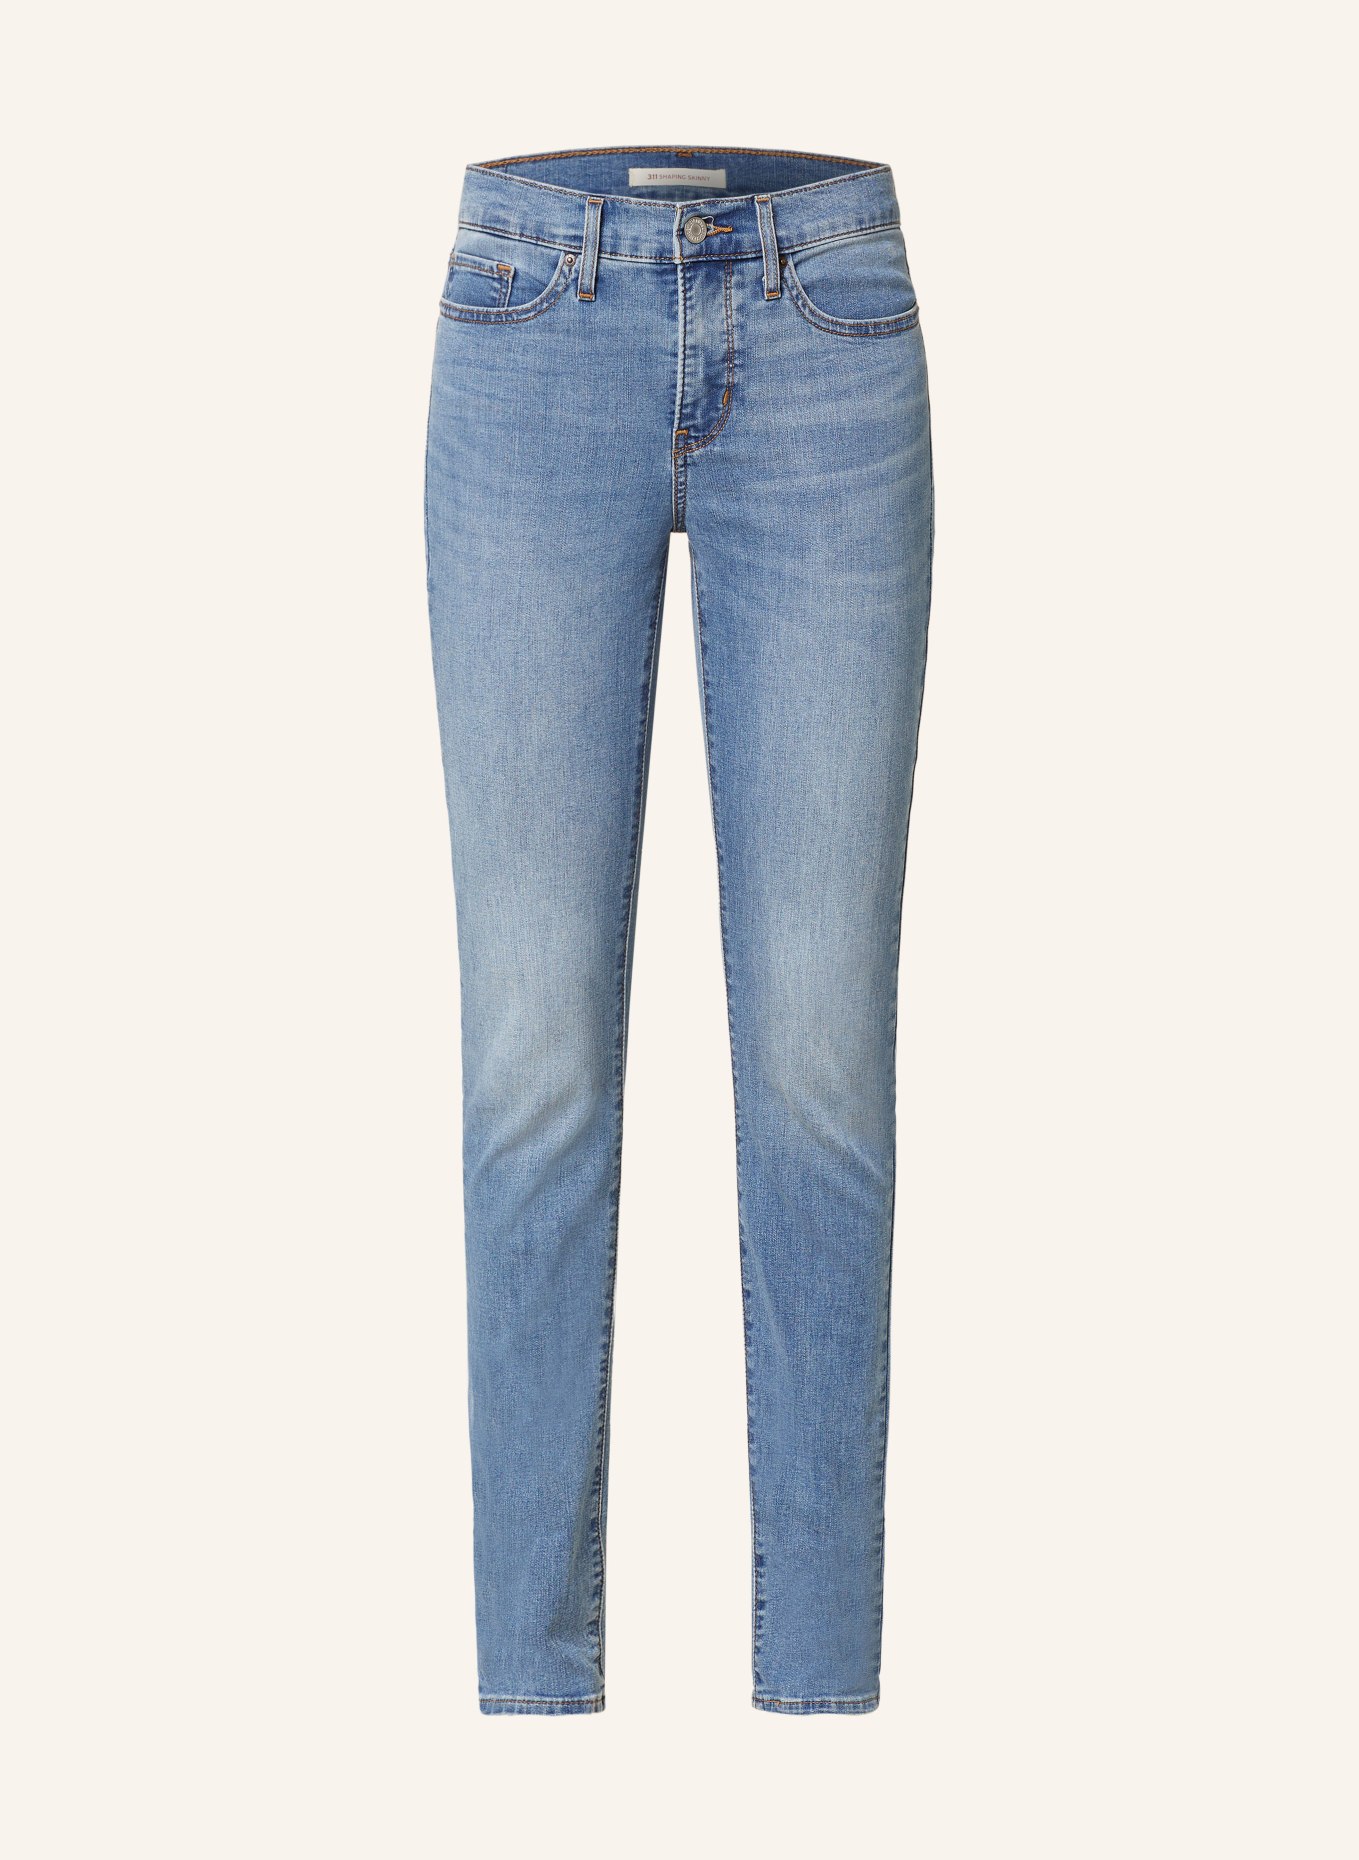 Levi's® Skinny Jeans 311, Farbe: 54 Med Indigo - Worn In (Bild 1)